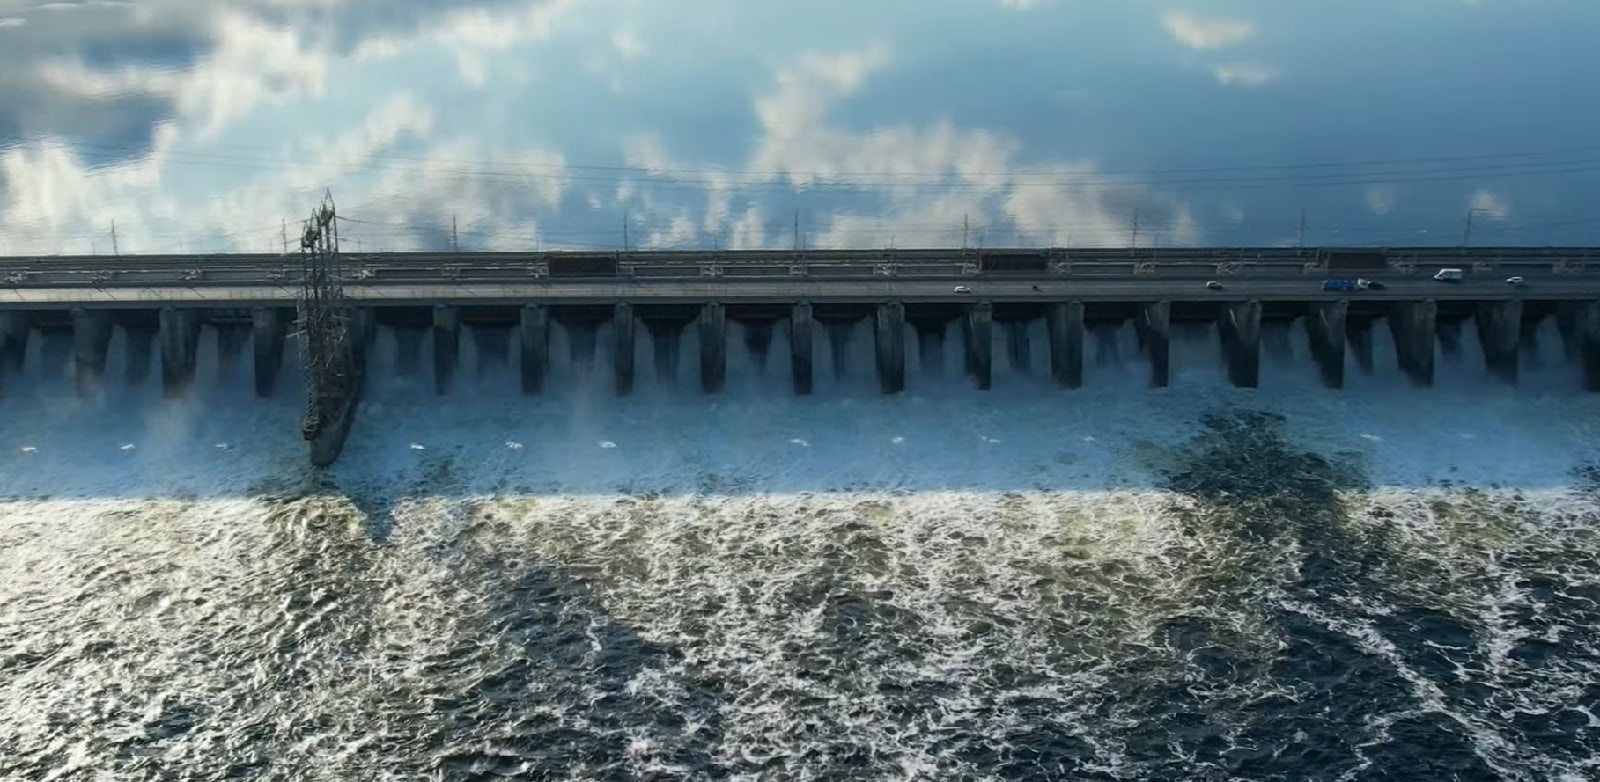 Дни сброса воды на волжской гэс. Жигулевская ГЭС водосброс. Жигулевская ГЭС 2022. ДНЕПРОГЭС 2022. Земляная плотина Жигулевской ГЭС.